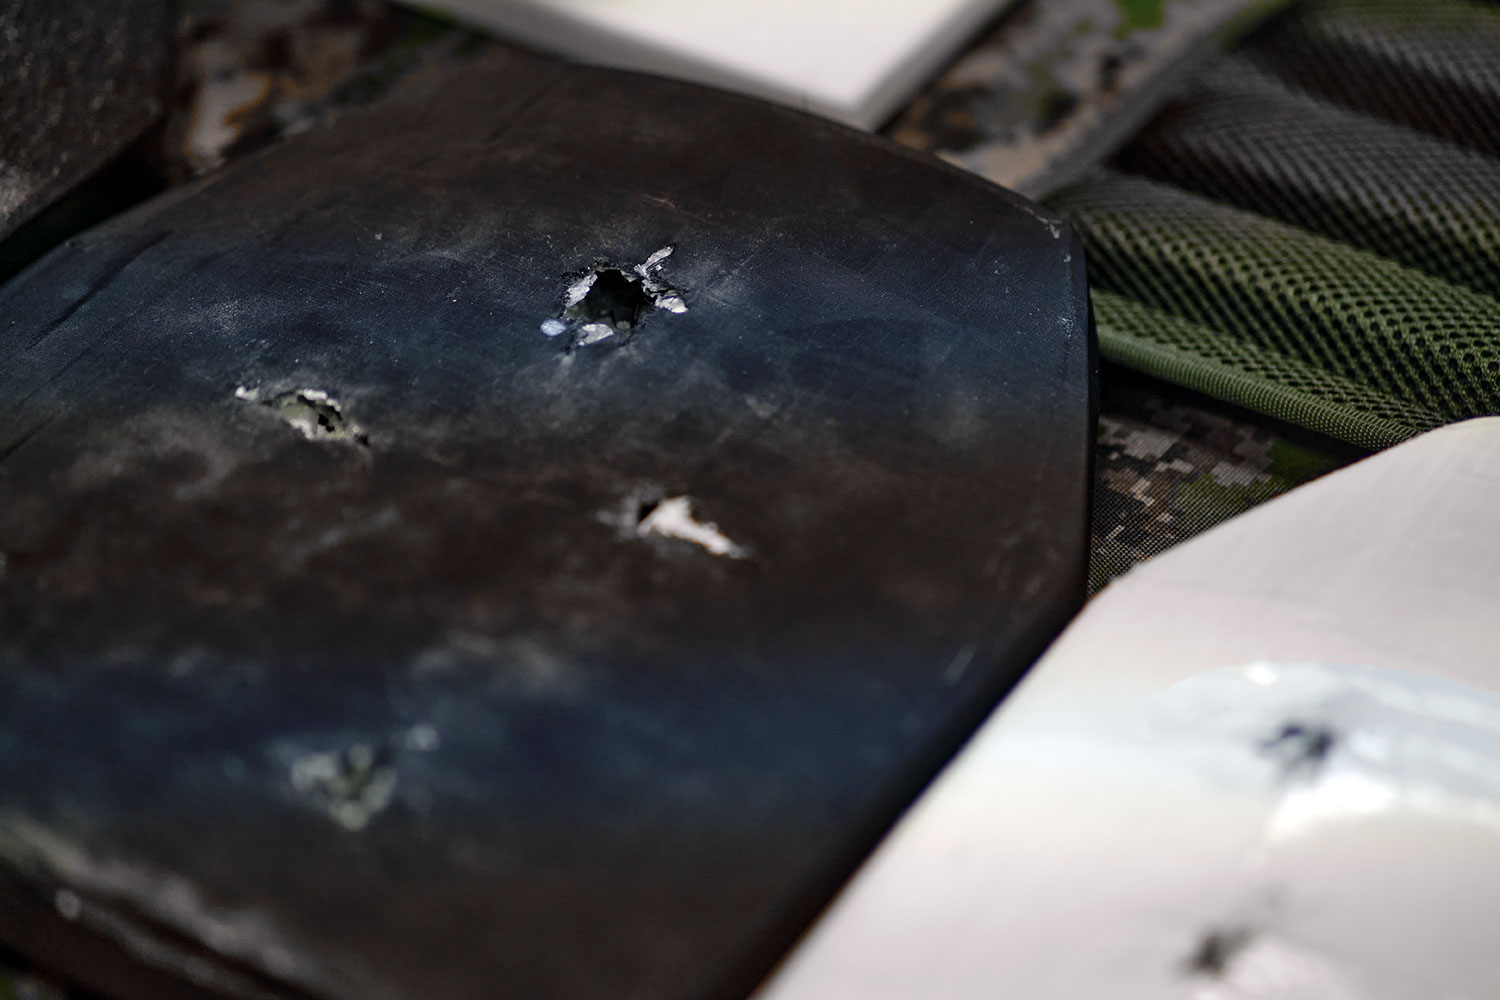 Muestras de impactos balísticos en la capa de blindaje de un chaleco antibalas